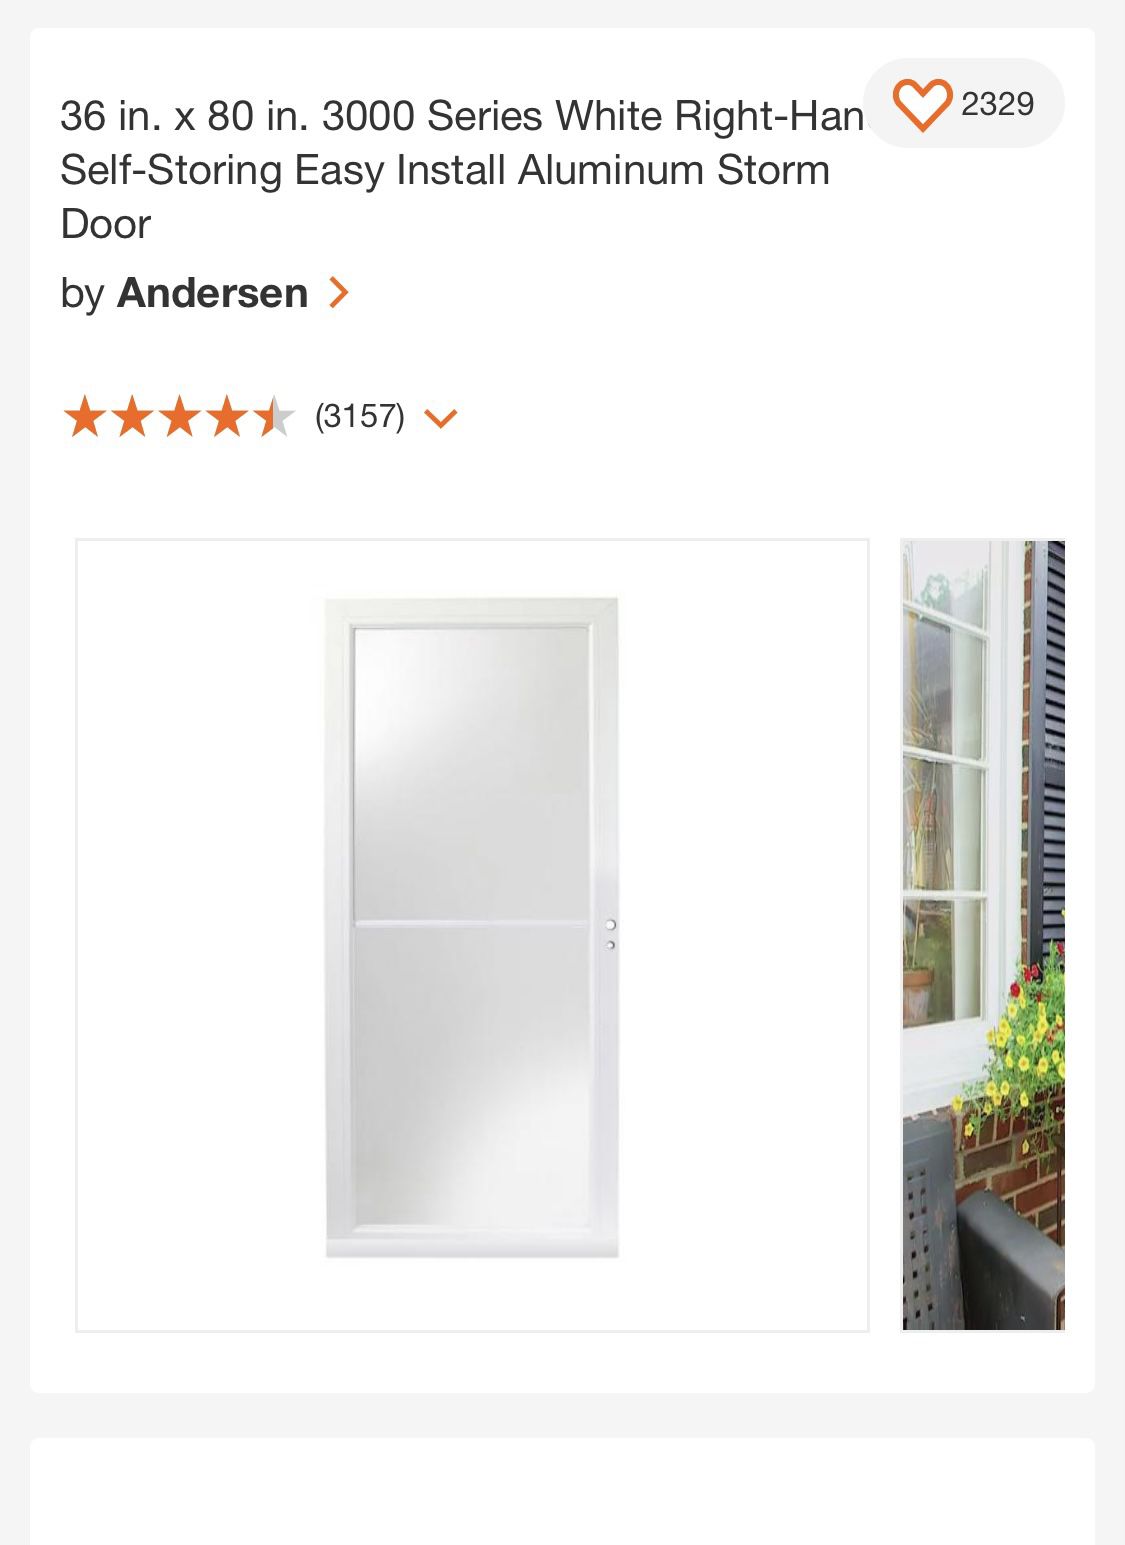 Andersen Storm & Screen Door 36x80